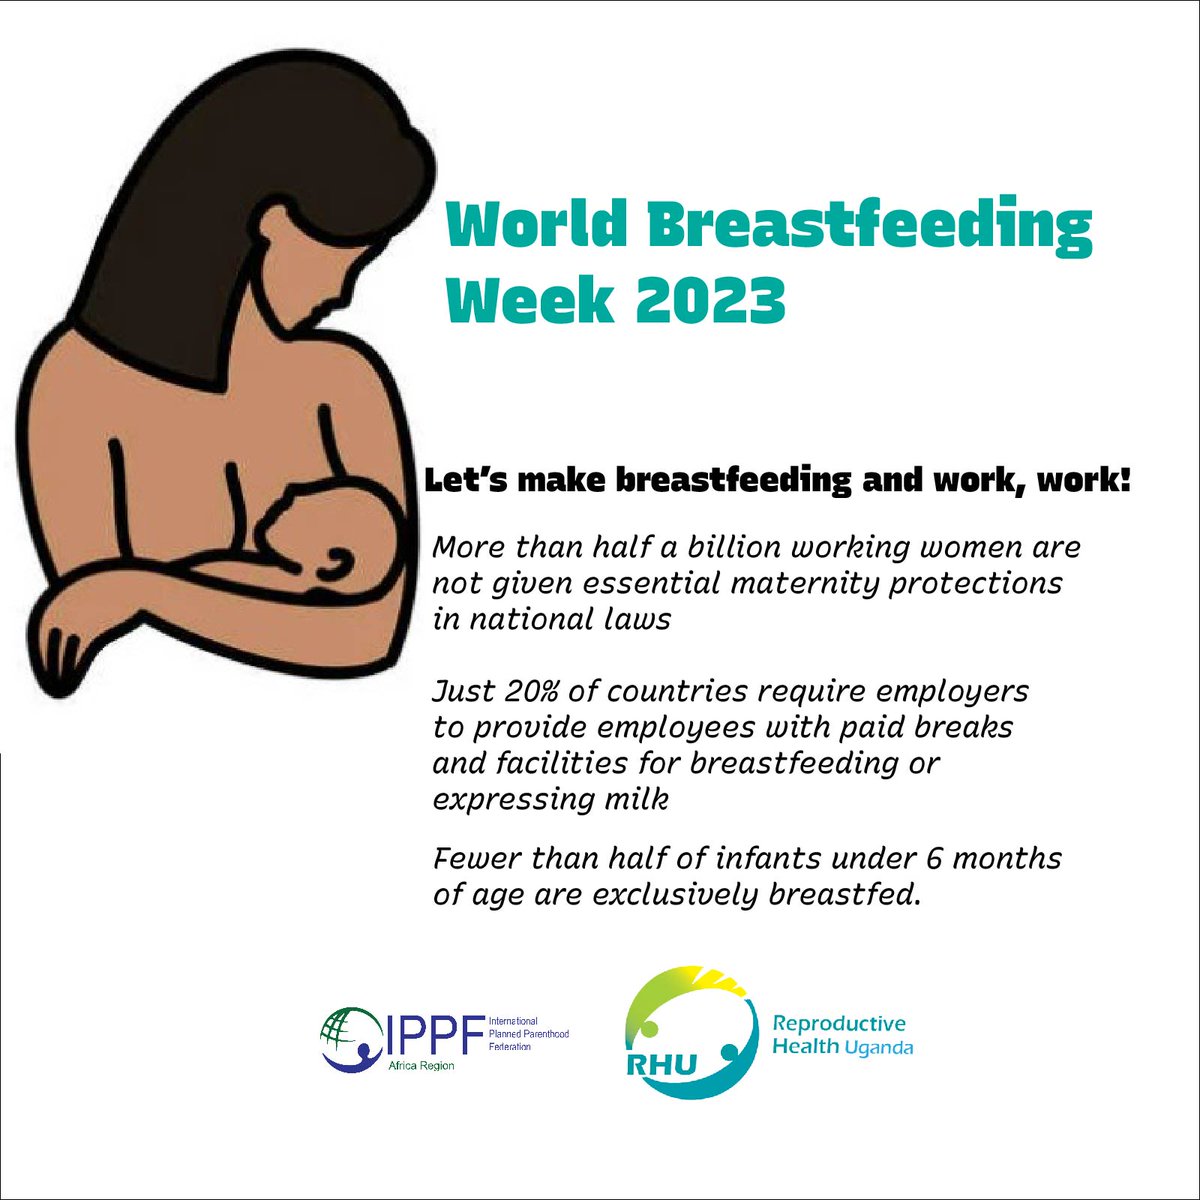 Let's make breastfeeding and work, work!

#breastfeedingweek 2023  #WeAreRHU